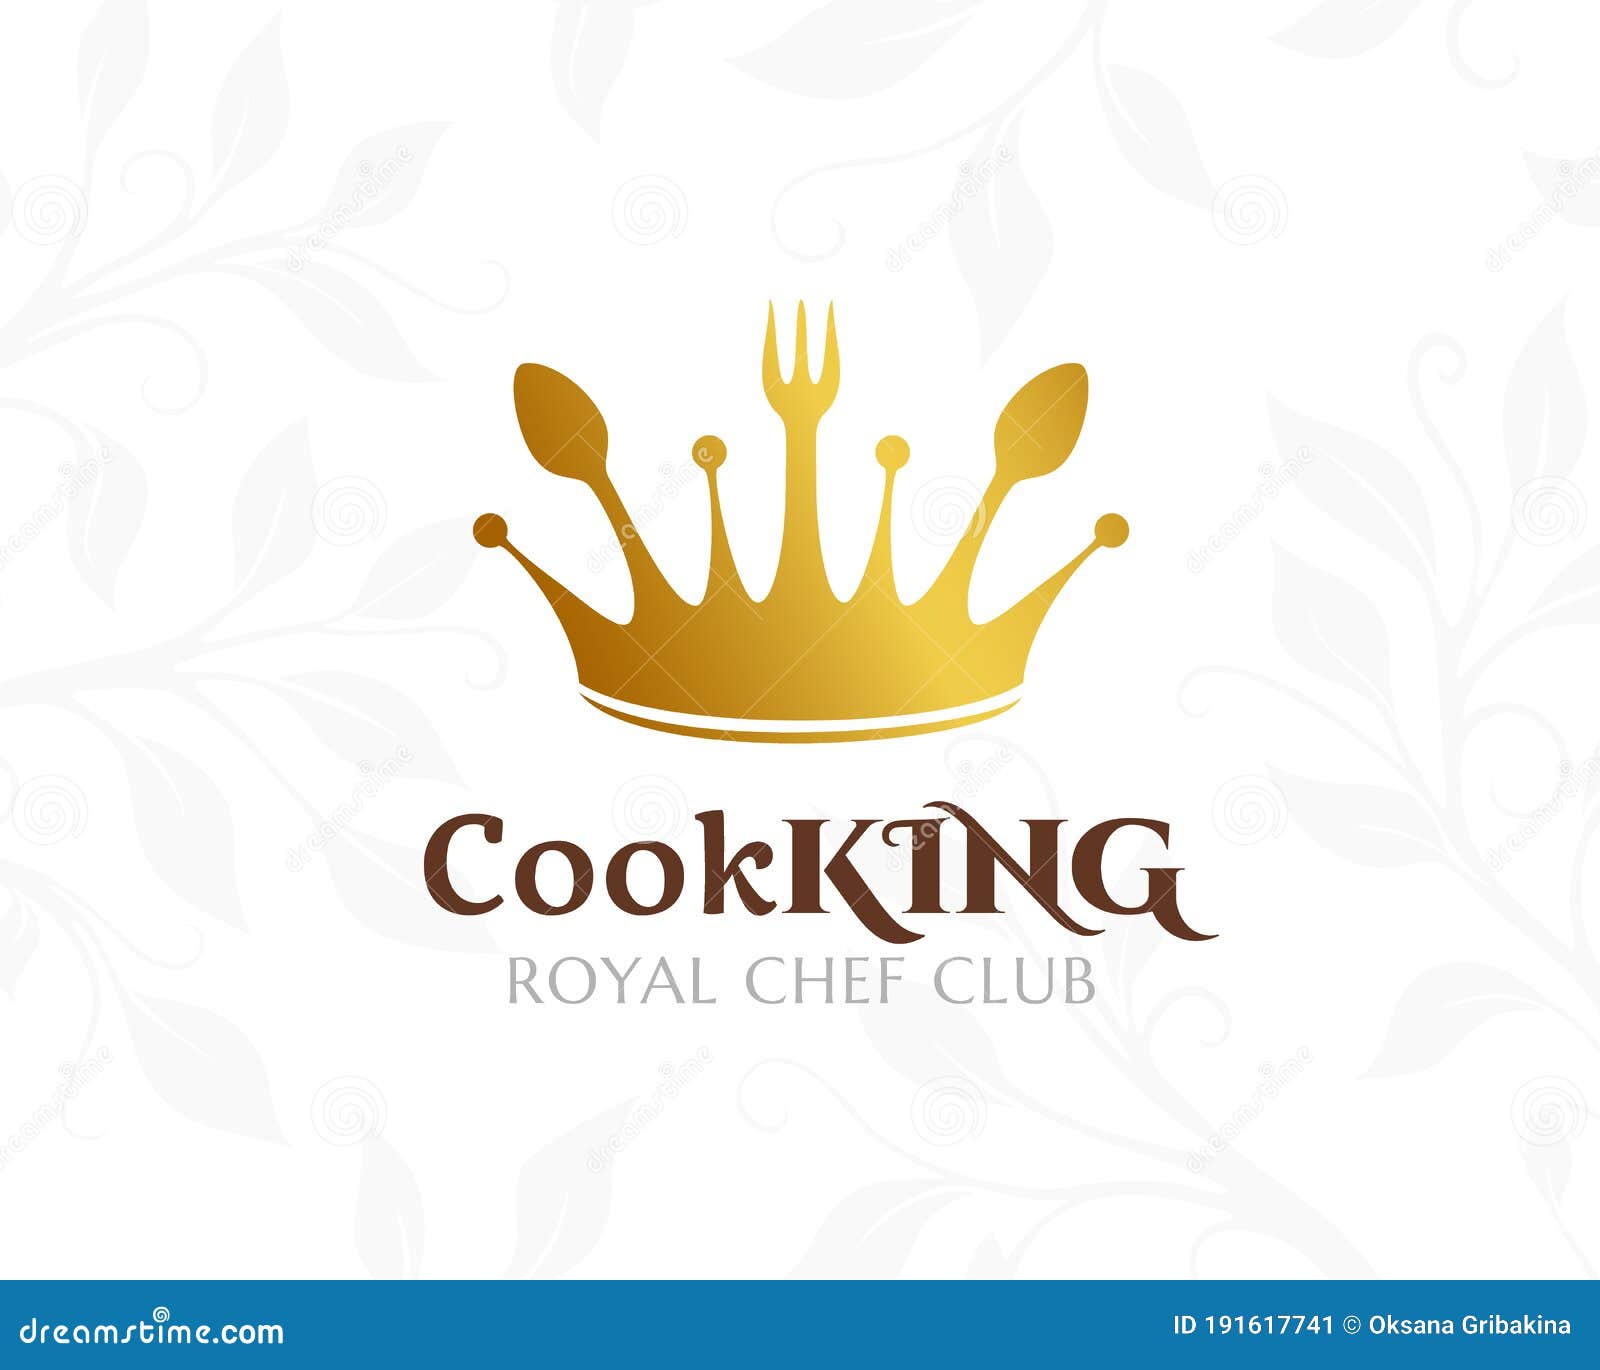 Afwijken server Ontleden Cook King Logo. Restaurant or Cafe Icon Stock Vector - Illustration of  logo, crown: 191617741